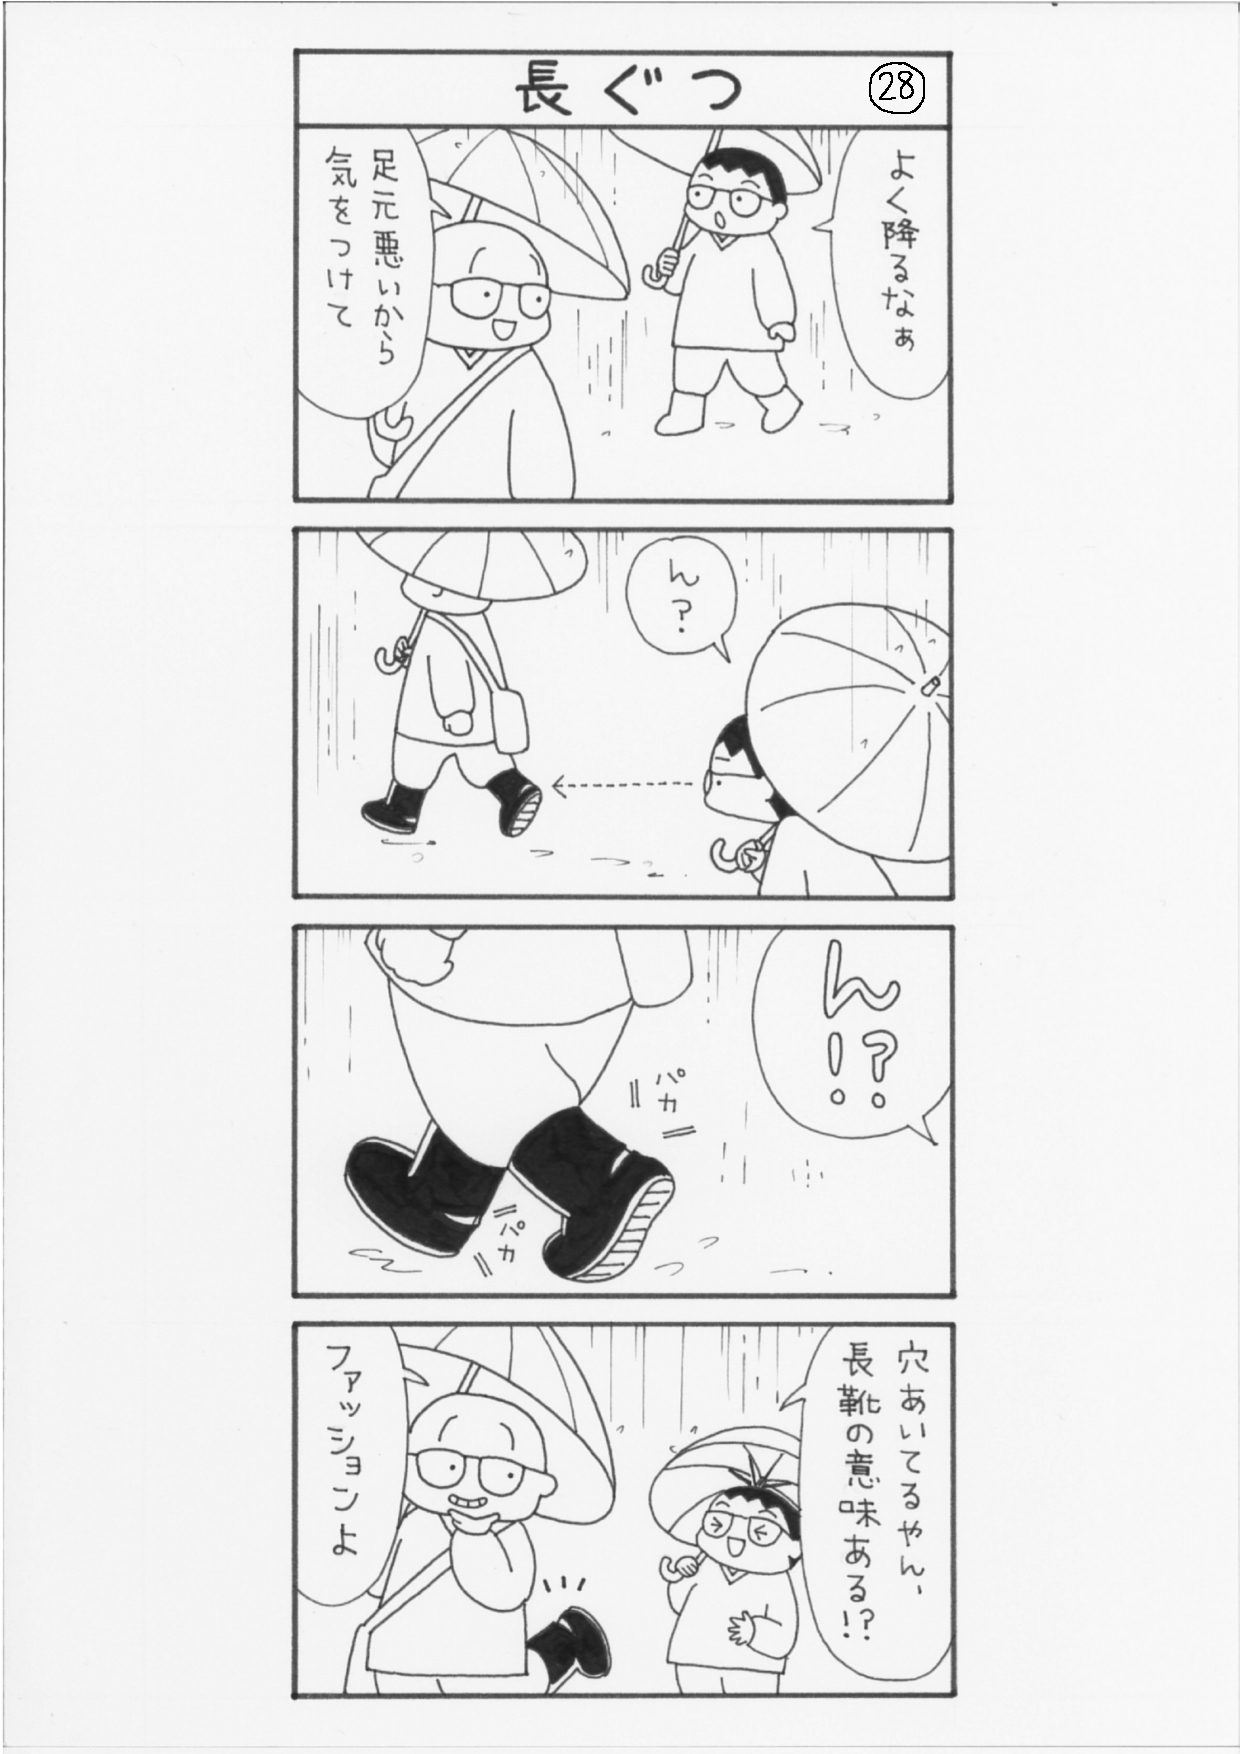 まっちゃん４コマ漫画28話